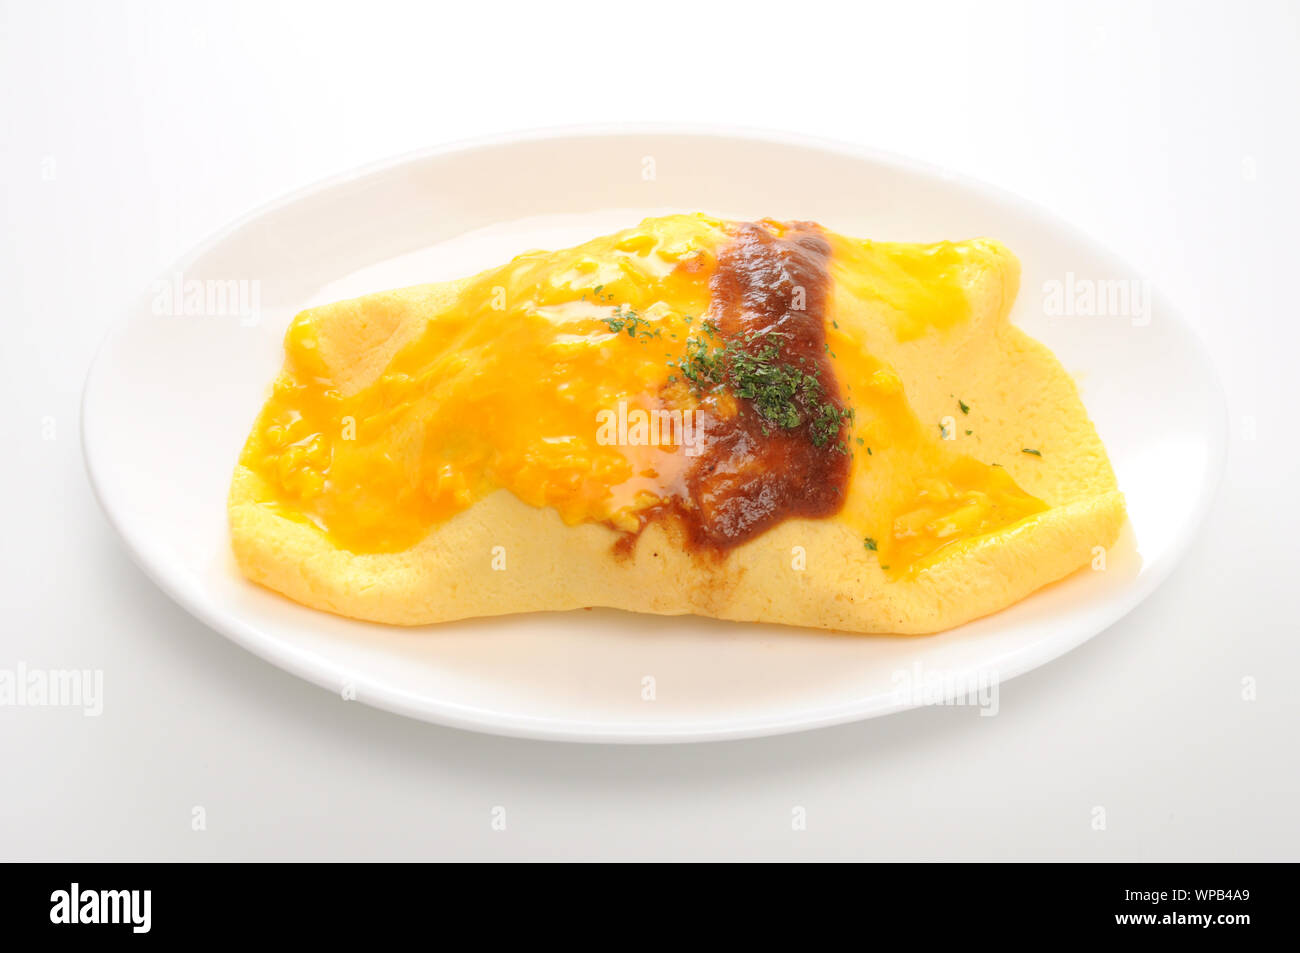 omuraisu omu rice omelet japanese food on plate isolated on white background Stock Photo